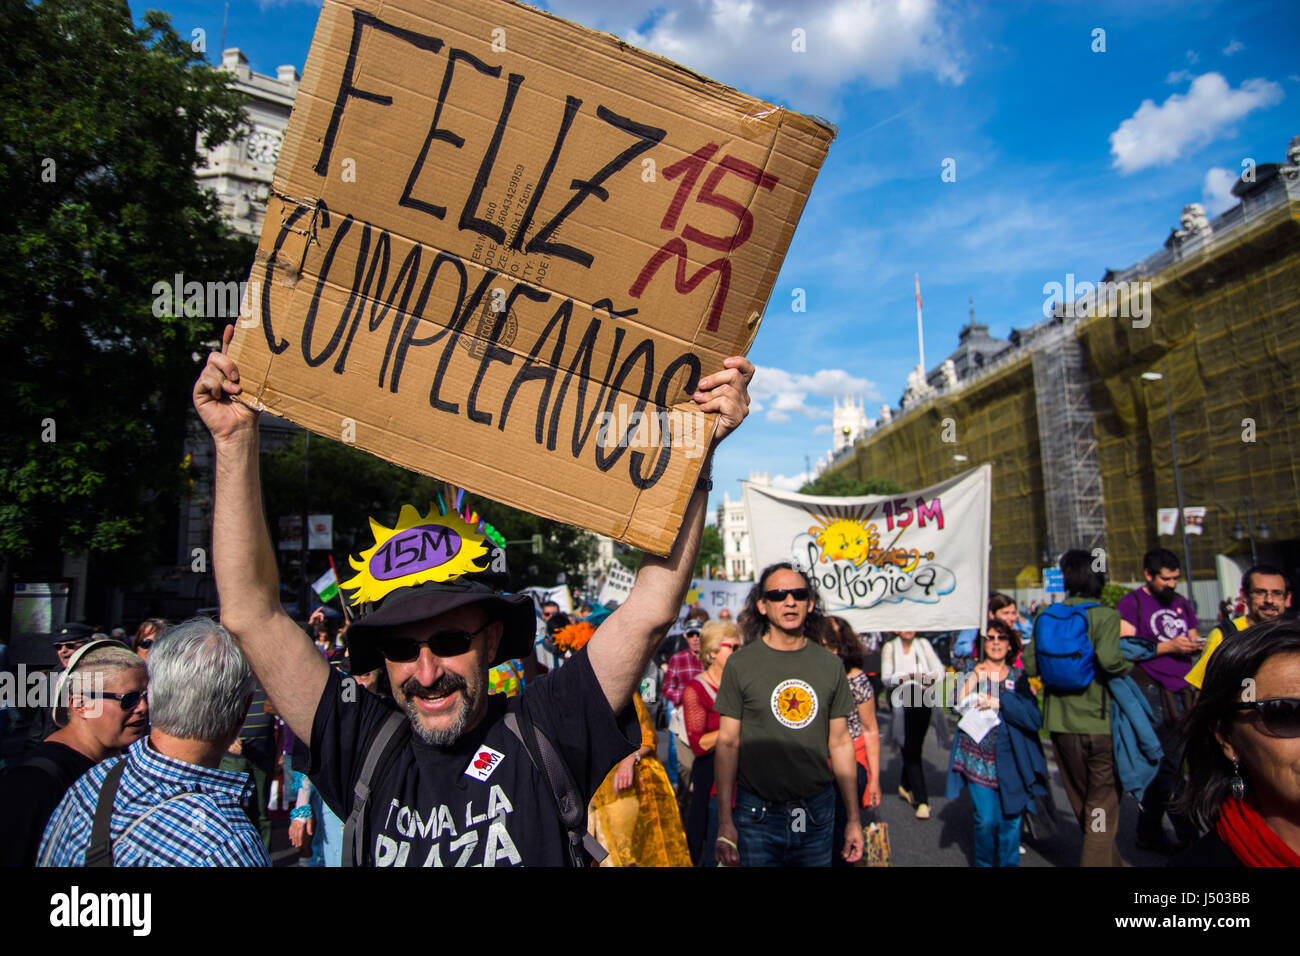 Madrid, Spagna. 14 Maggio, 2017. Un uomo con un cartello che recita "Happy birthday 15M' durante una dimostrazione per il sesto anniversario di 15M movimento sociale in Spagna a Madrid. Credito: Marcos del Mazo/Alamy Live News Foto Stock